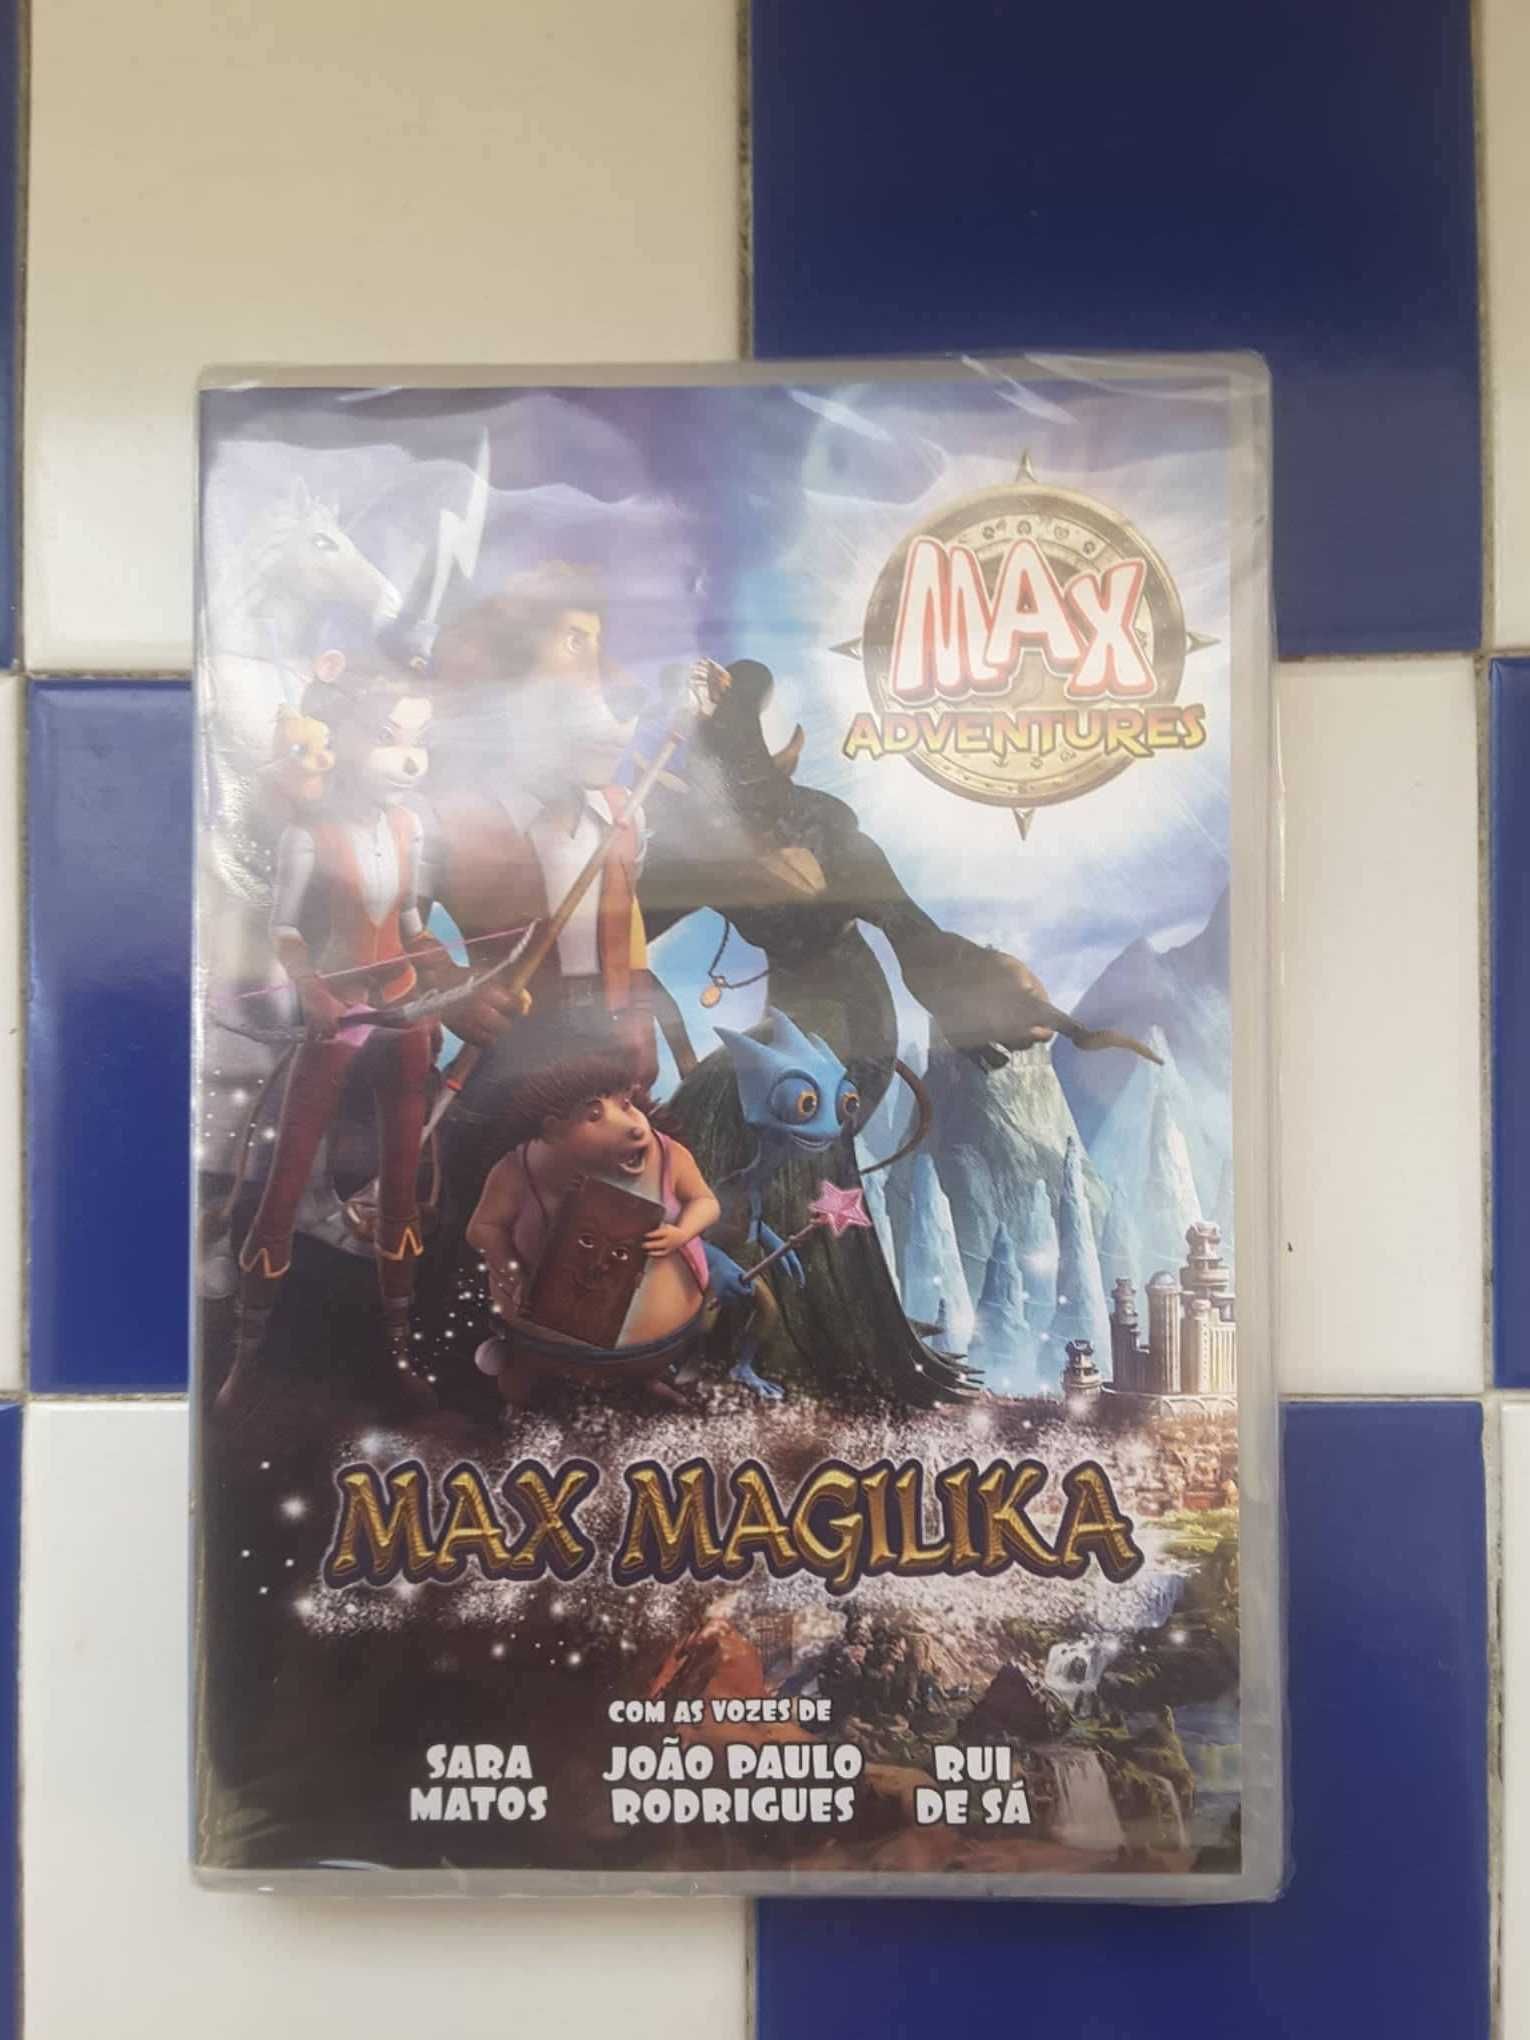 DVD Infantil "Max Adventures: Max Magilika" (NOVO, selado!)